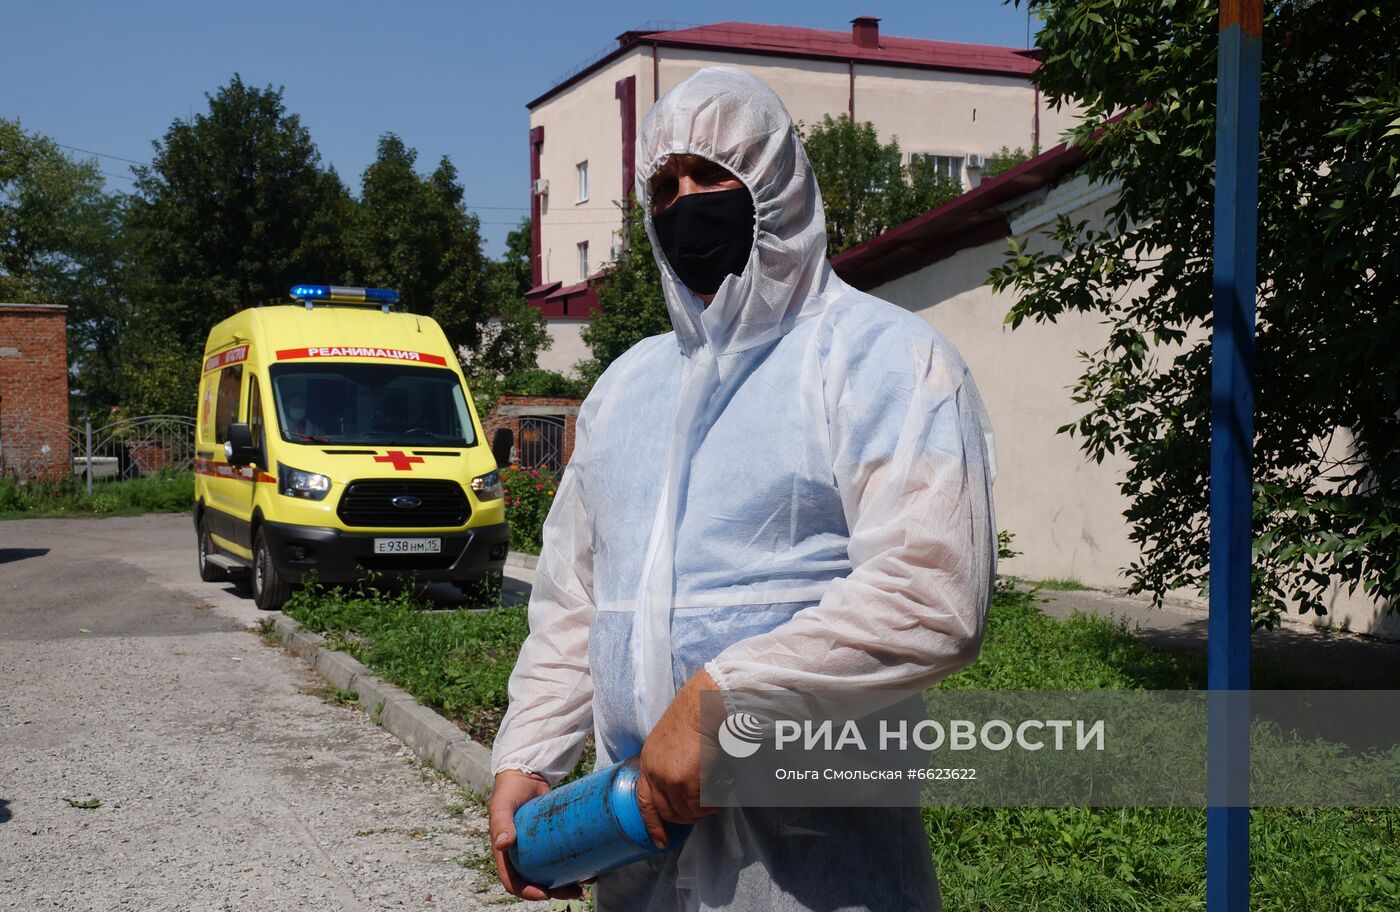 Прорыв трубы с кислородом в больнице в Северной Осетии Прорыв трубы с кислородом в больнице в Северной Осетии